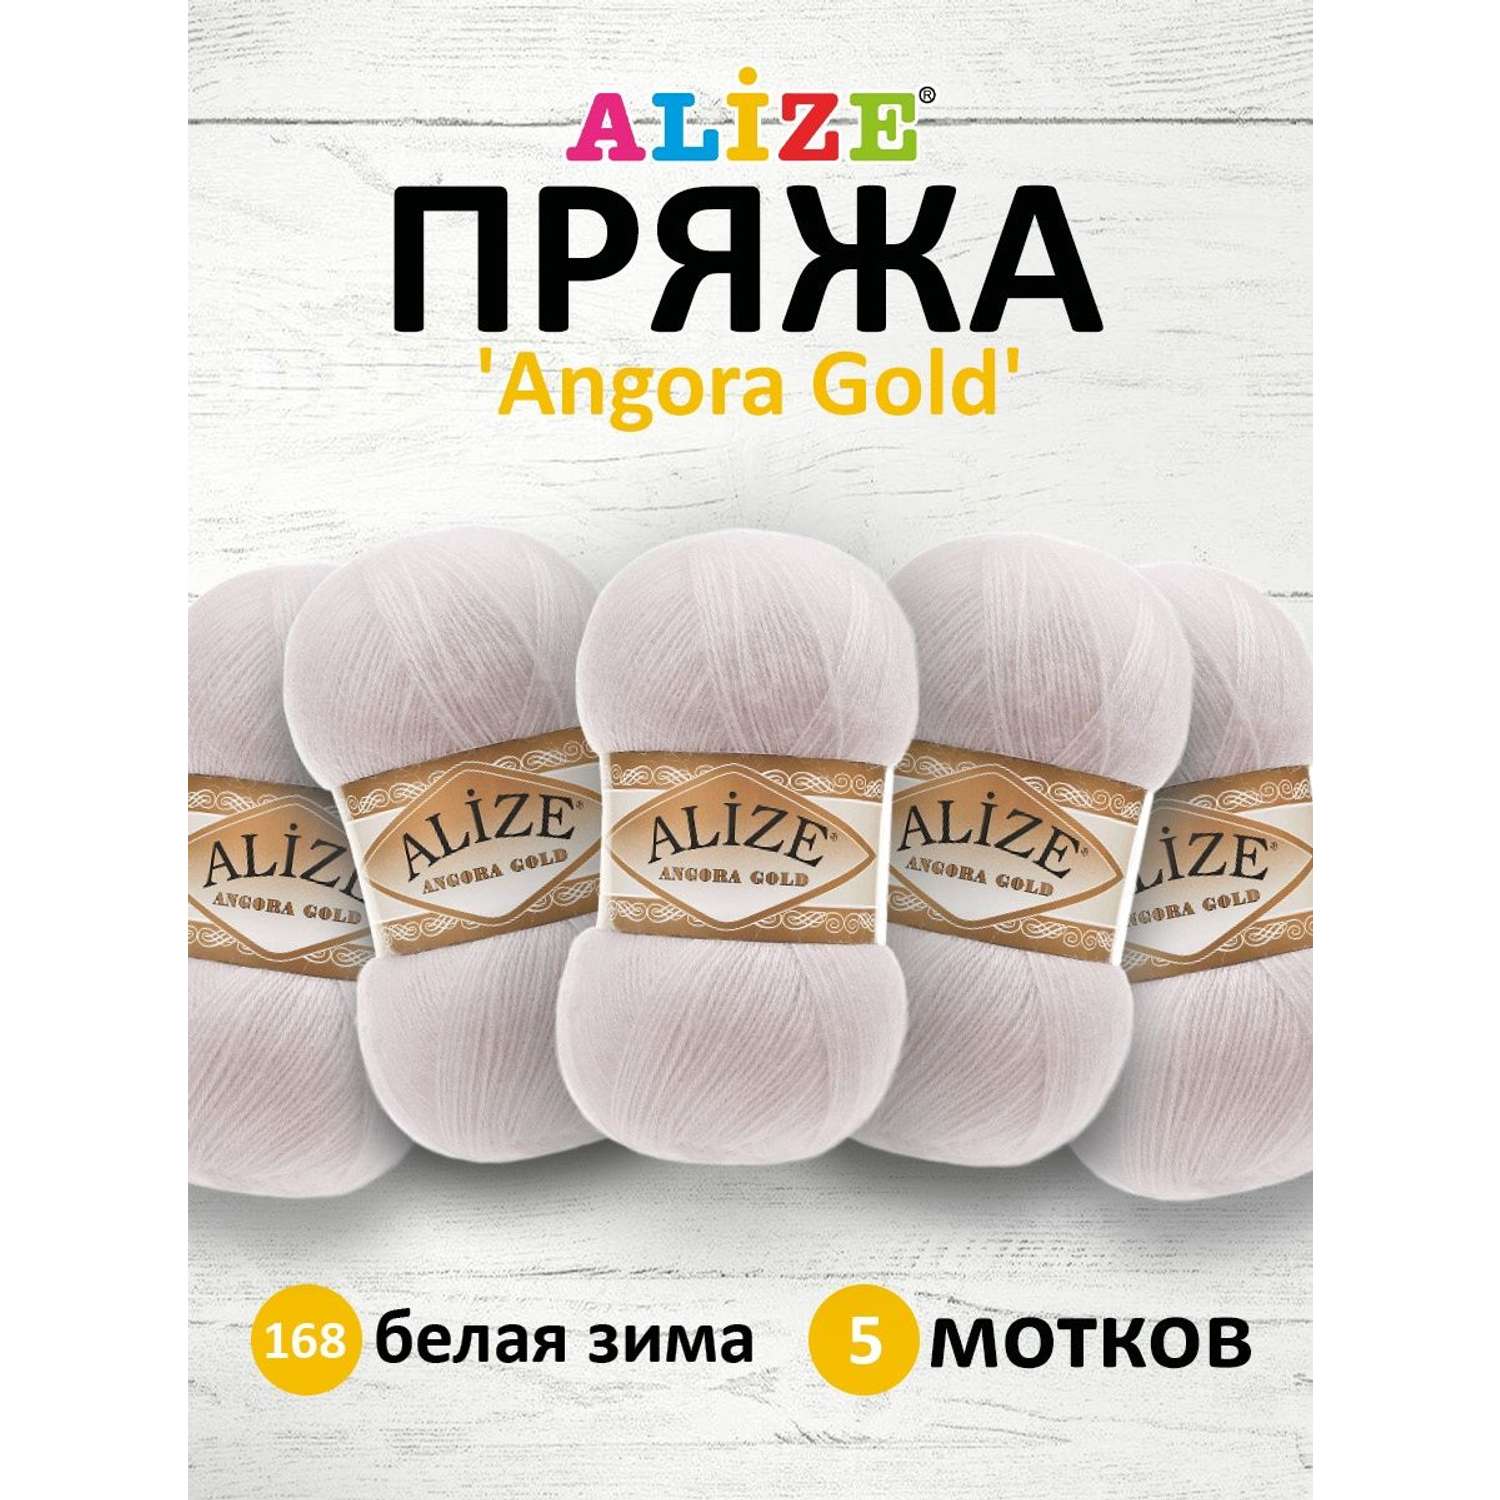 Пряжа Alize мягкая теплая для шарфов кардиганов Angora Gold 100 гр 550 м 5 мотков 168 белая зима - фото 1